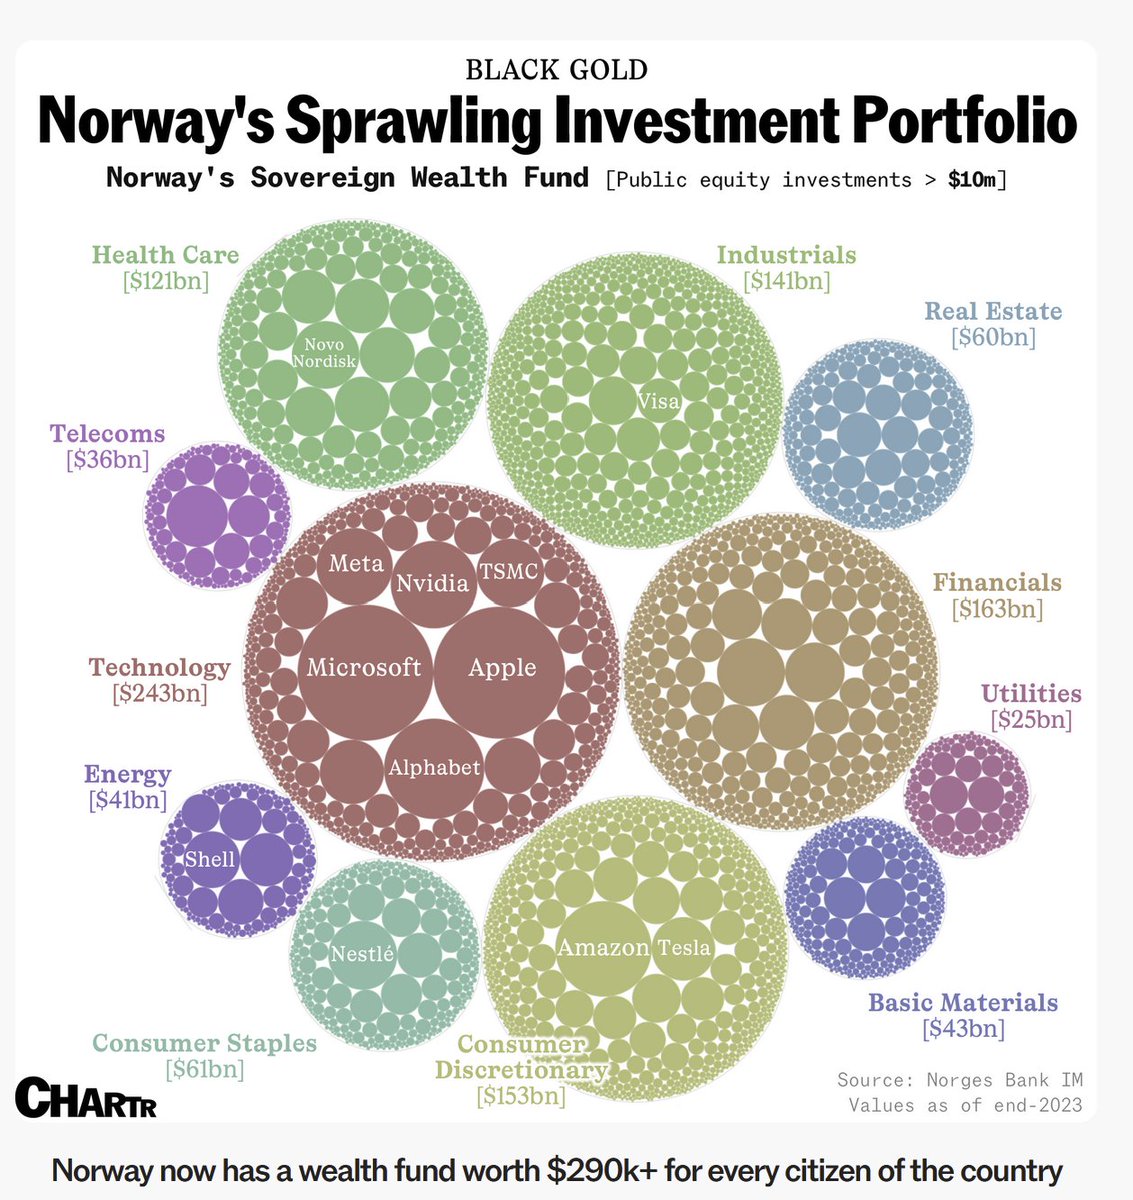 Norway's Sovereign Wealth Fund Investment Portfolio.